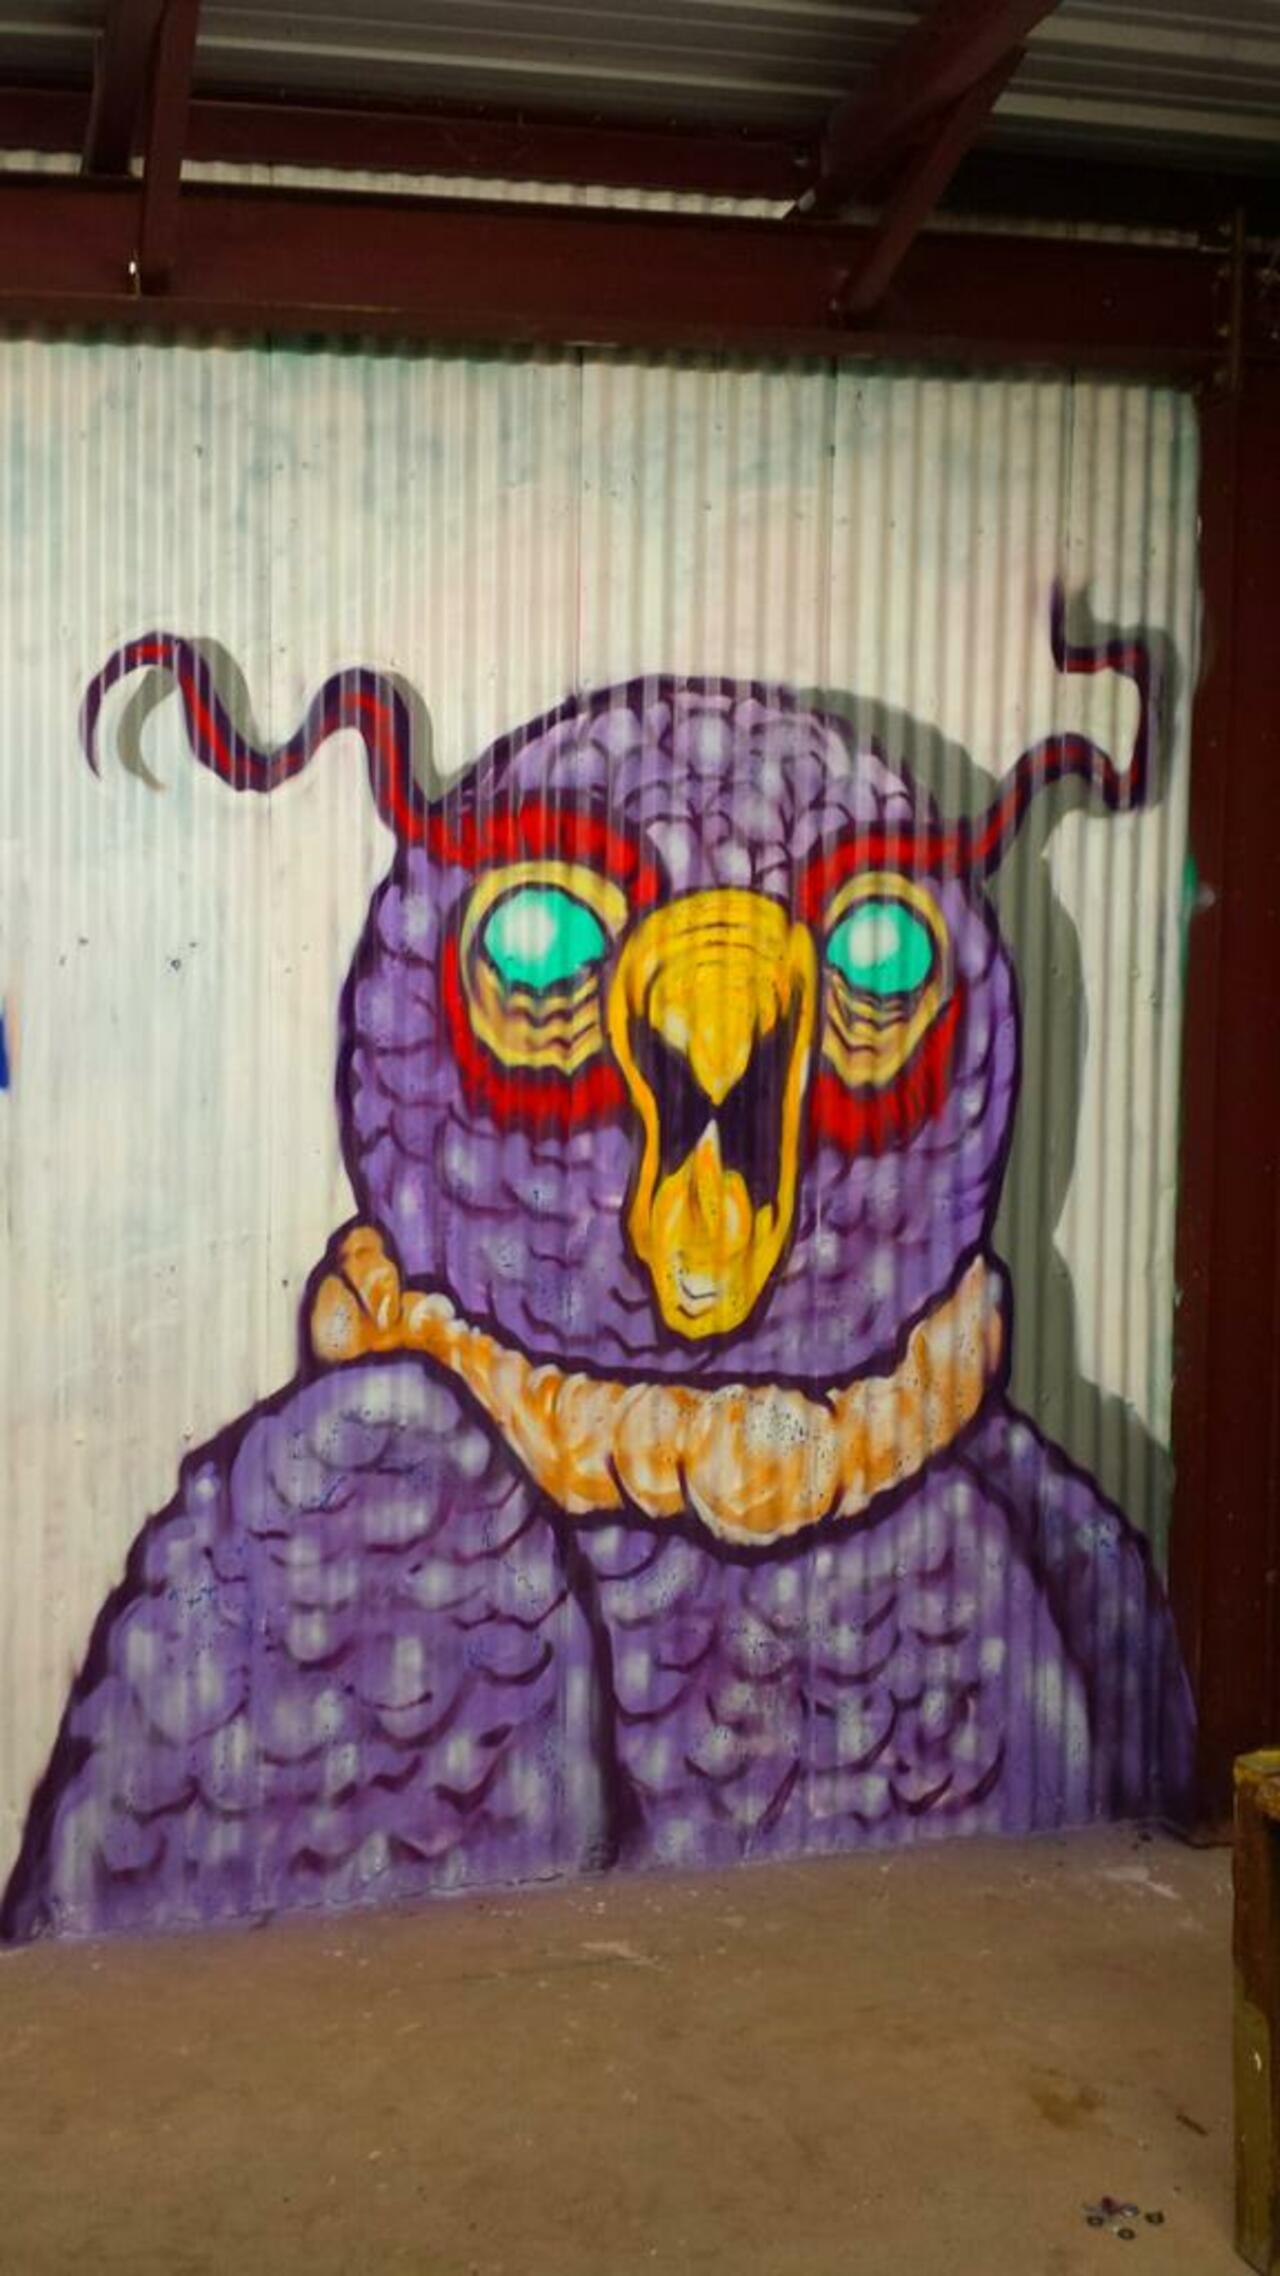 "Not givin a hoot" #owl #character #characters #bird #graffiti #mural #graffiti #nocturnal #spraypaintonly #art http://t.co/8btXP05BtP